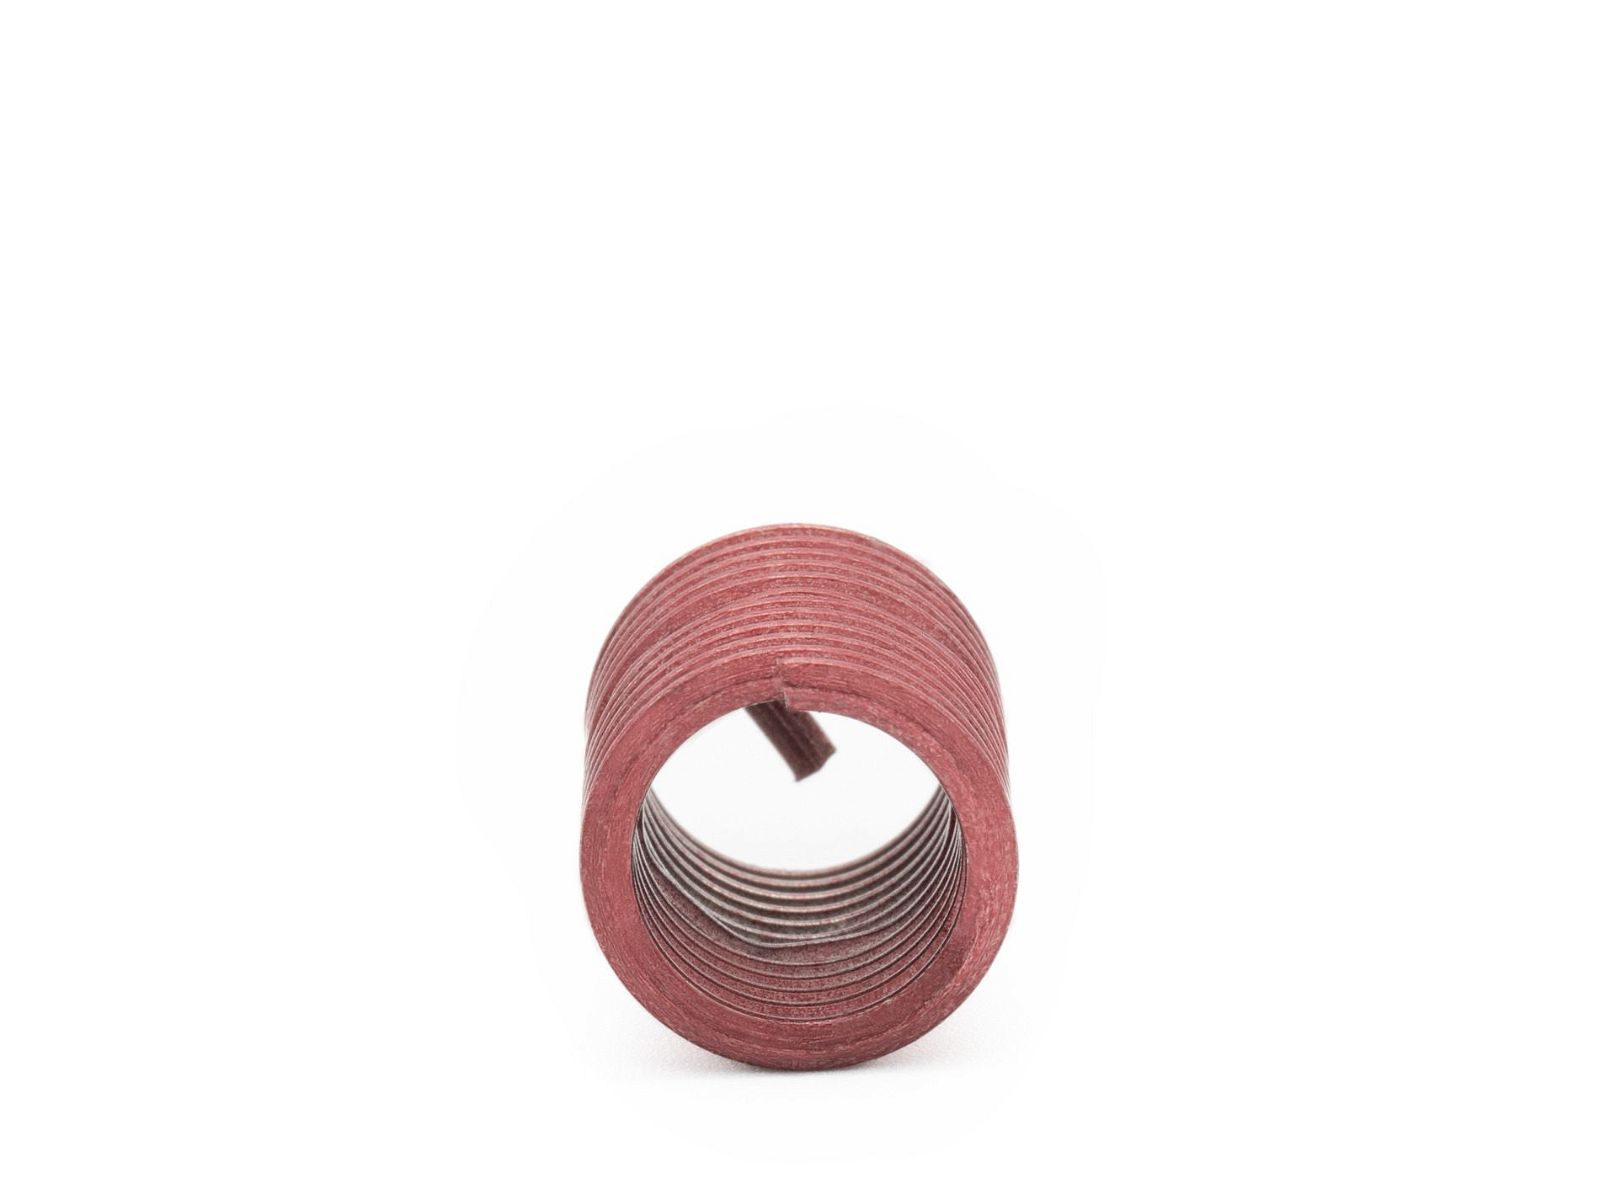 BaerCoil Wire Thread Inserts M 8 x 1.0 - 2.0 D (16 mm) - screw grip (screw locking) - 100 pcs.